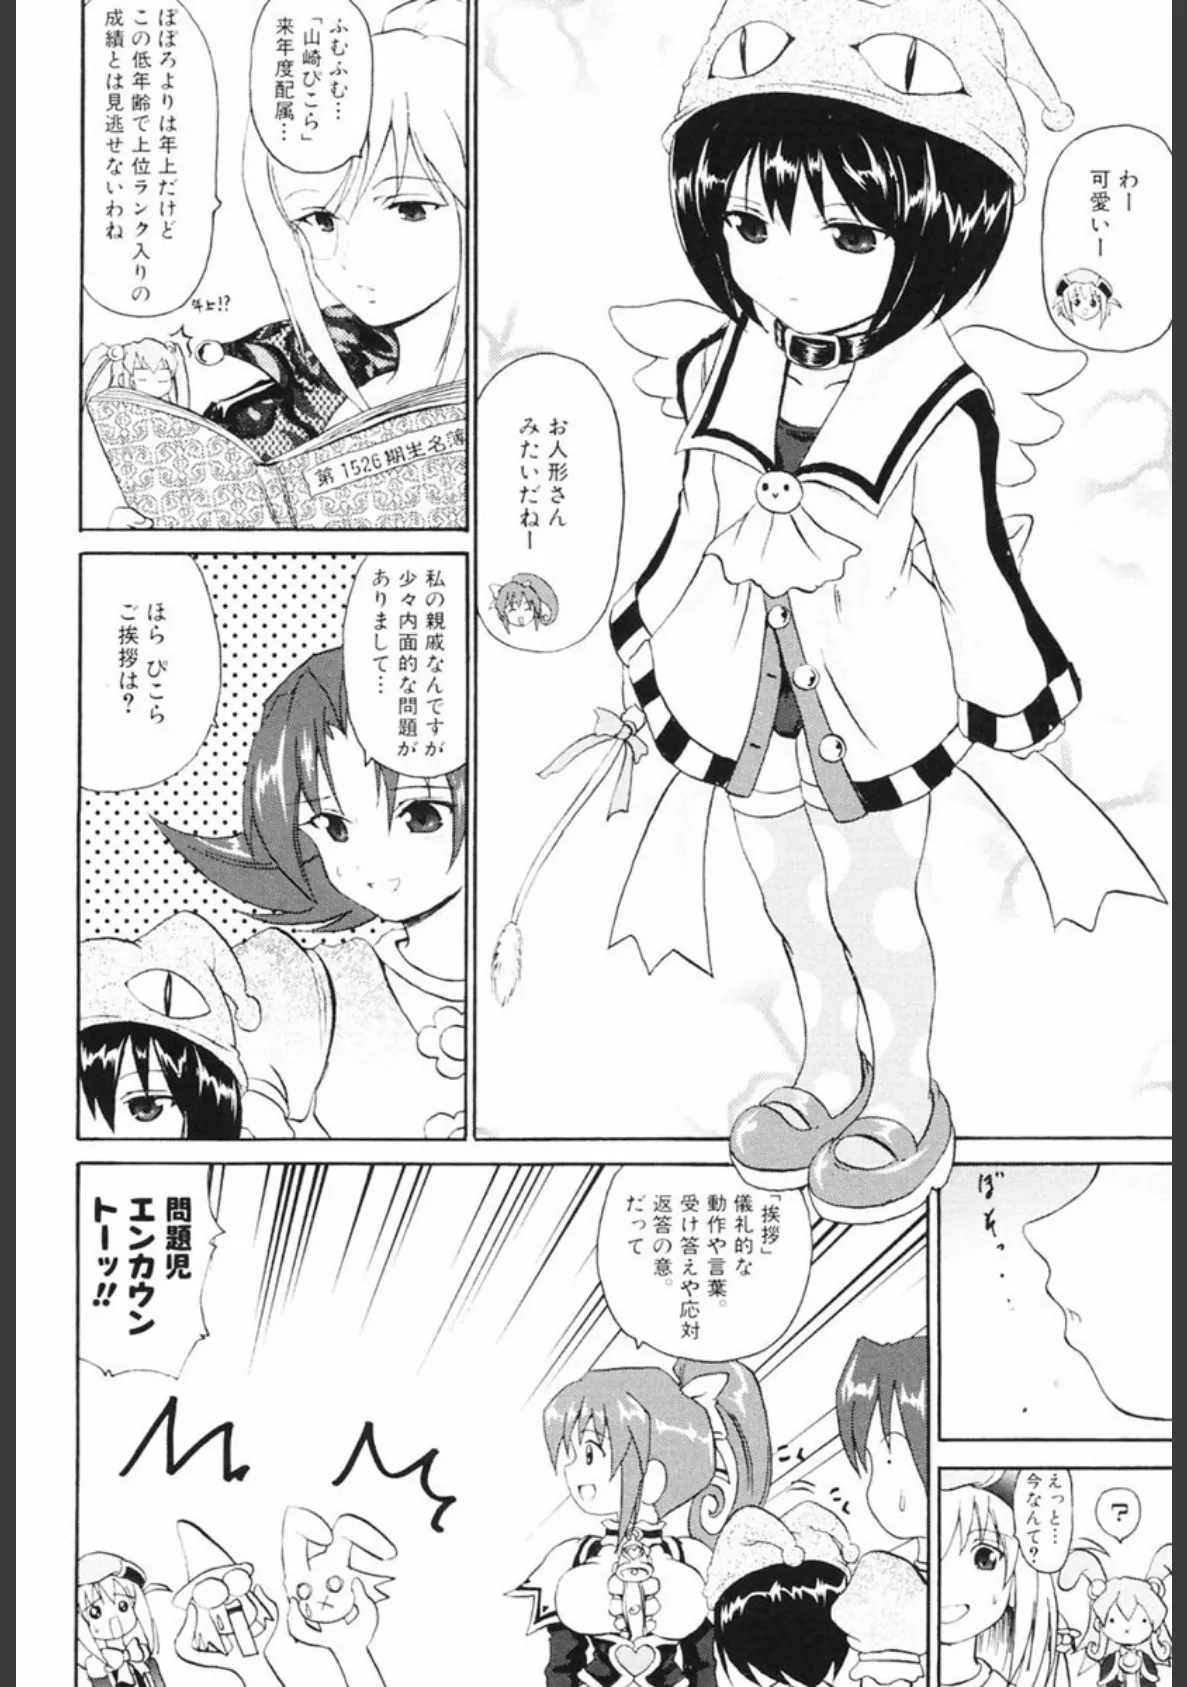 魔法少女ミルキー☆ベル 2 9ページ